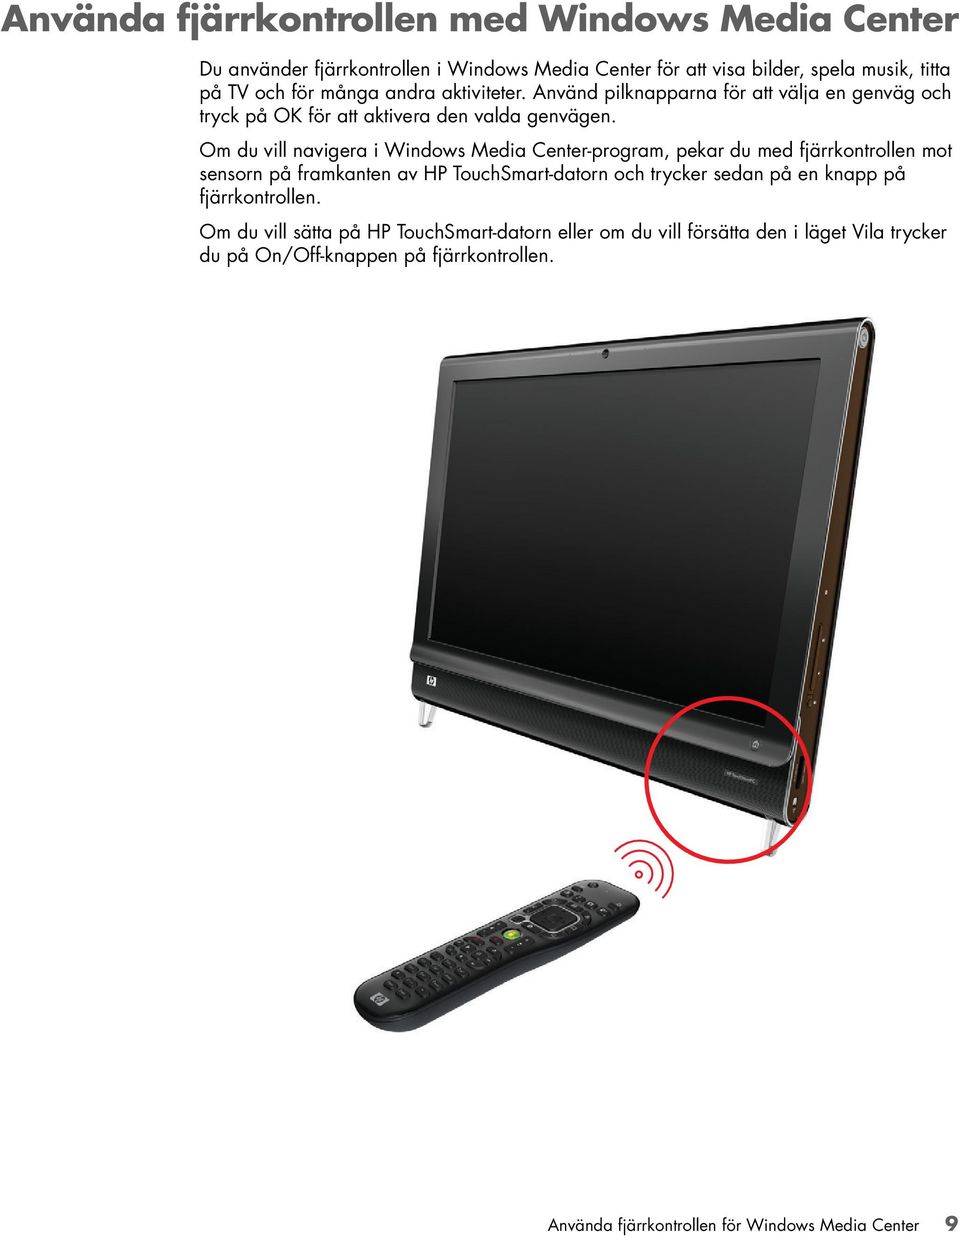 Om du vill navigera i Windows Media Center-program, pekar du med fjärrkontrollen mot sensorn på framkanten av HP TouchSmart-datorn och trycker sedan på en